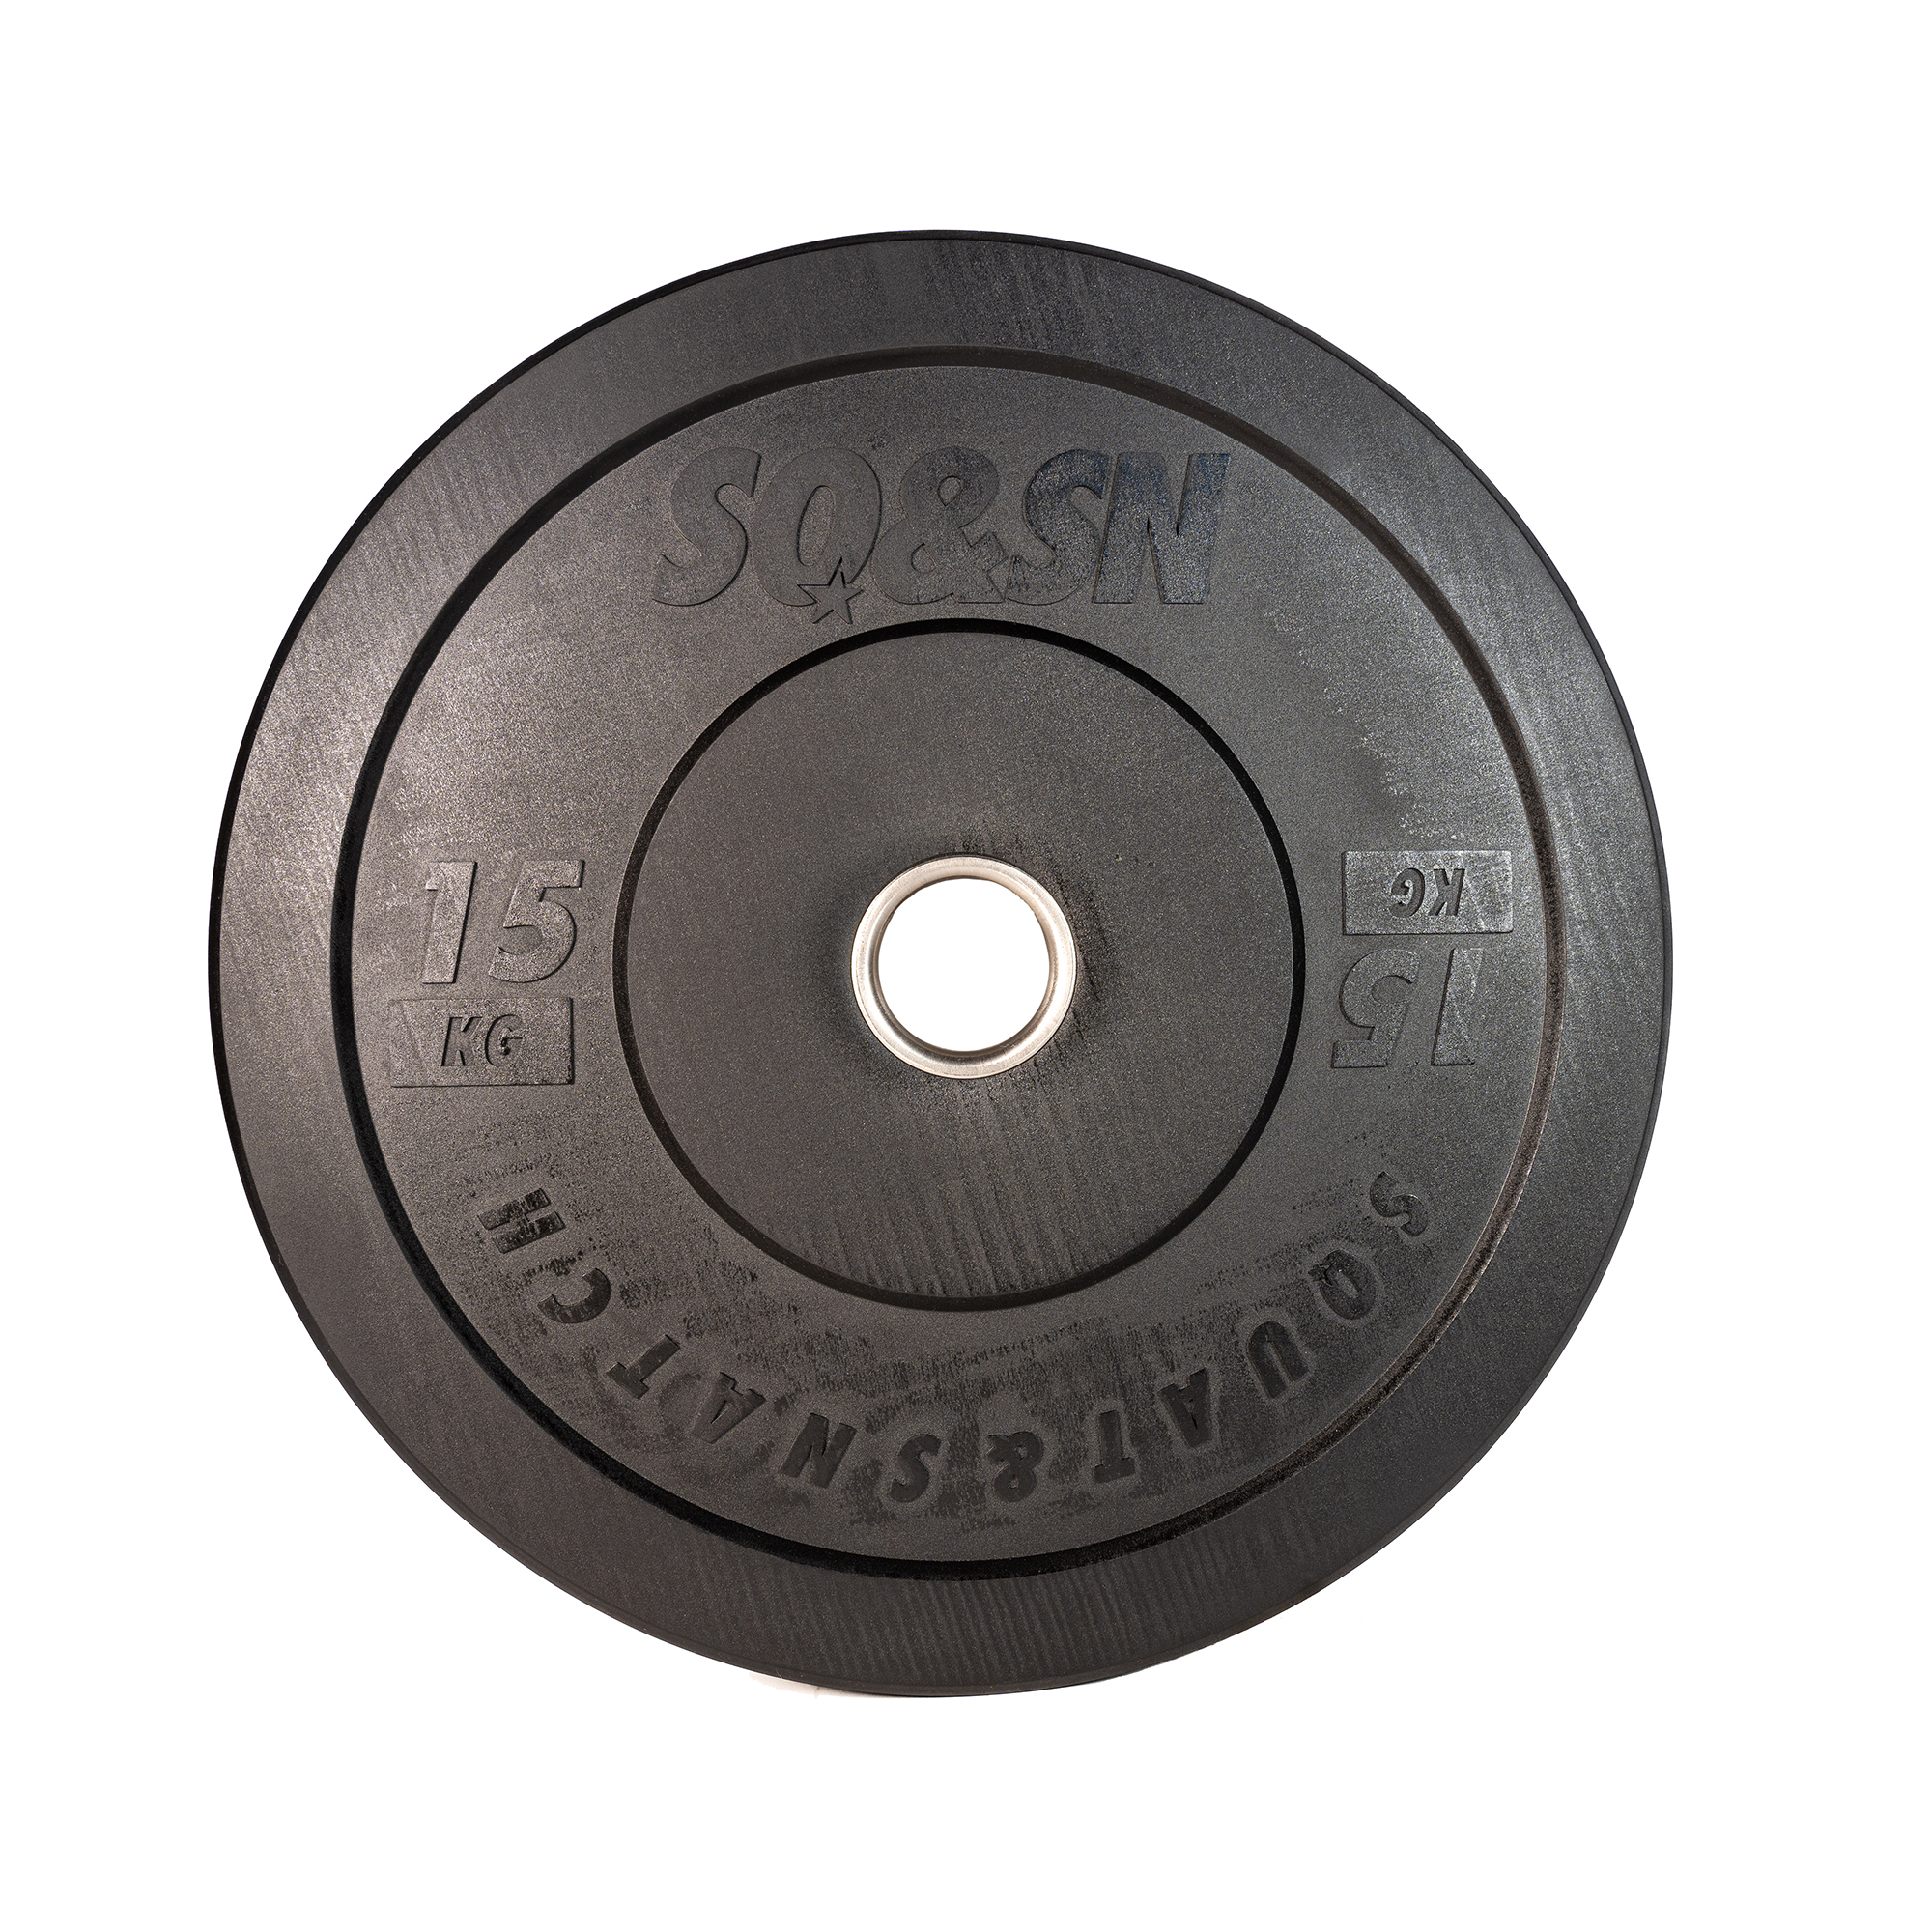 Brug SQ&SN Bumper Plate Vægtskive (15 kg) i sort. Udstyr til styrketræning, vægtløftning og crossfit træning til en forbedret oplevelse